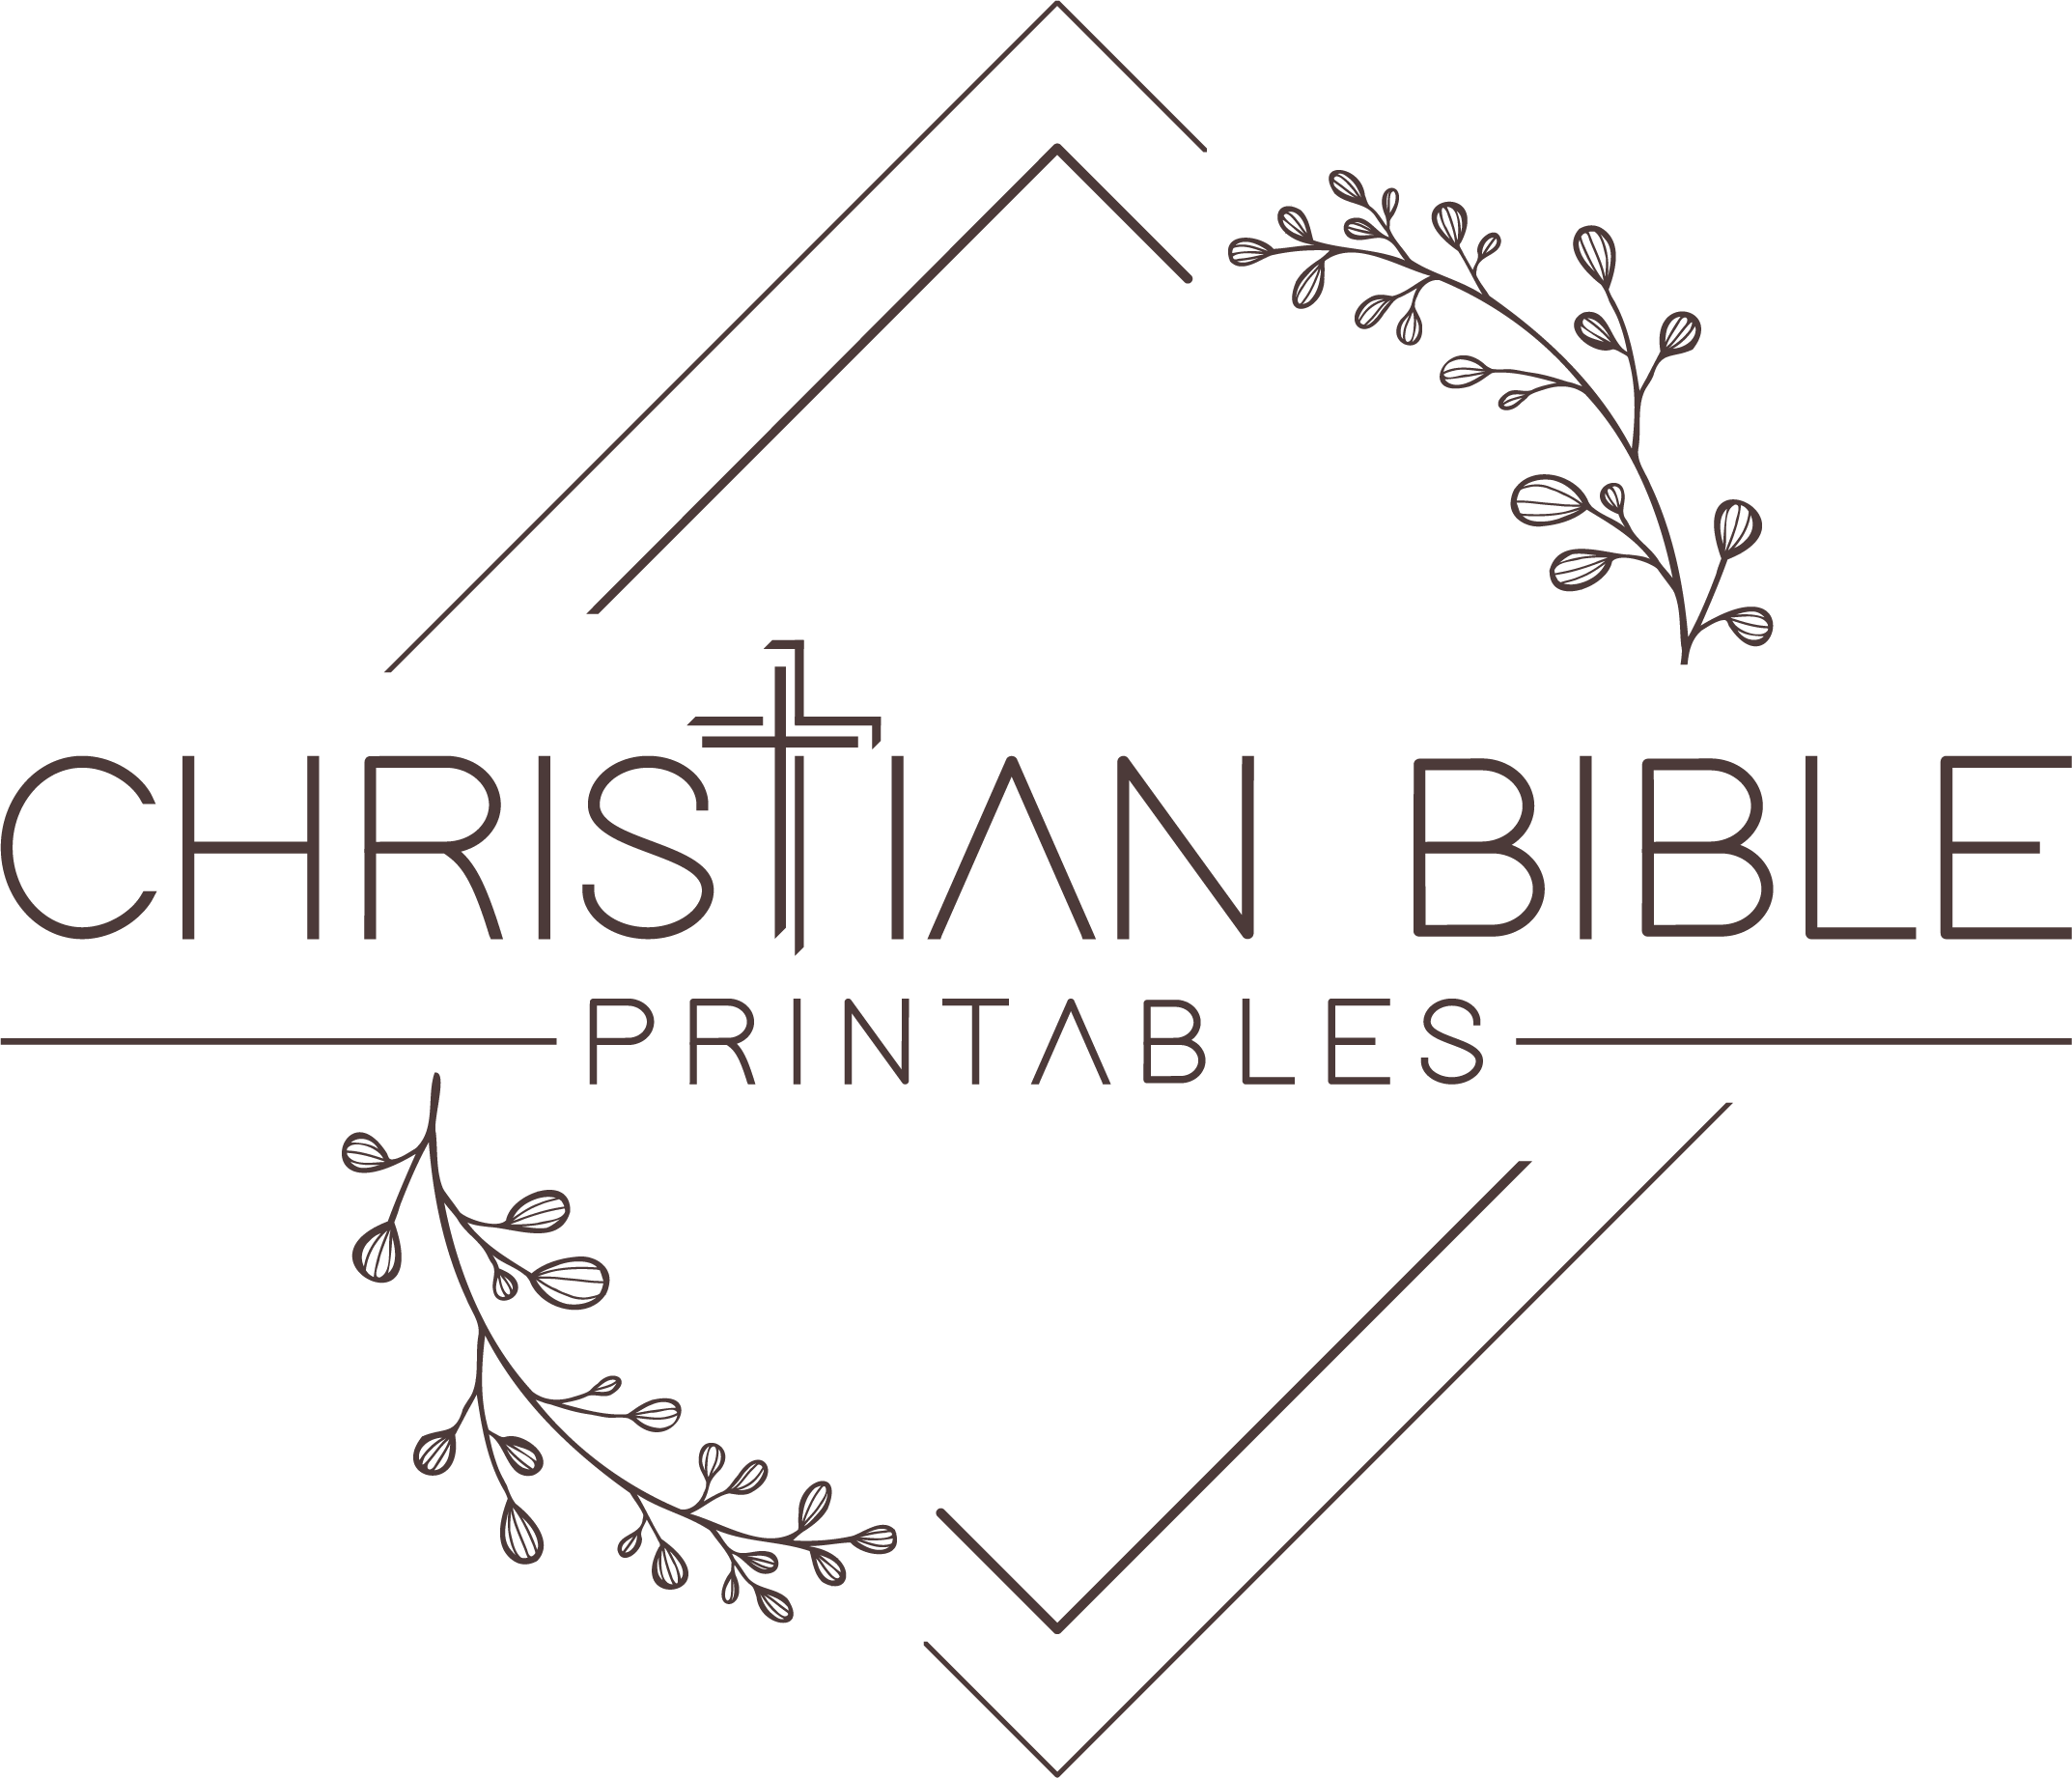 Christian Bible Printables